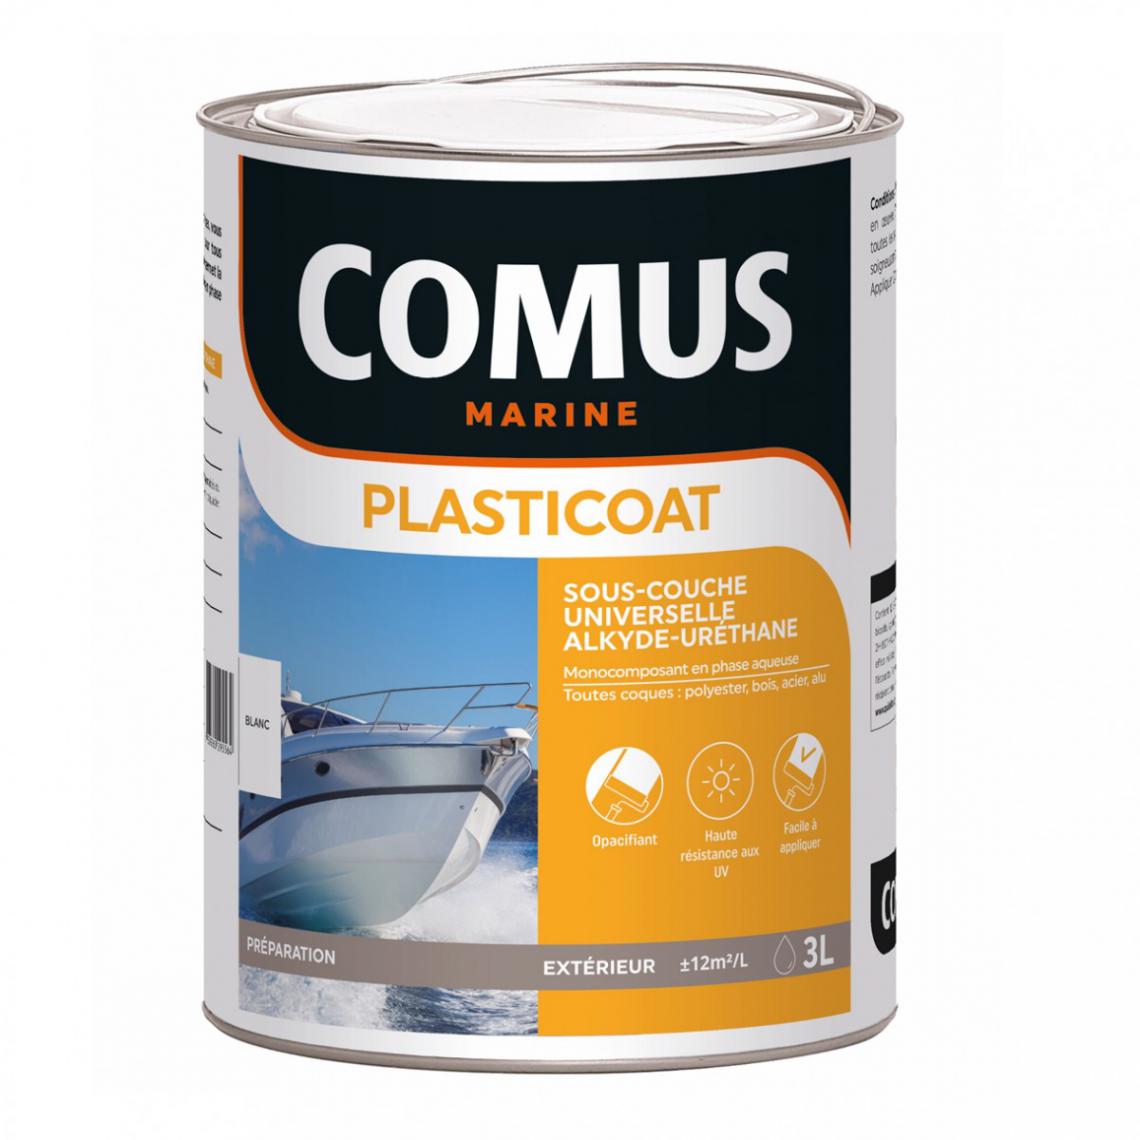 Comus - PLASTICOAT Blanc 3L - Sous-couche universelle mono-composante en phase aqueuse - COMUS MARINE - Peinture extérieure